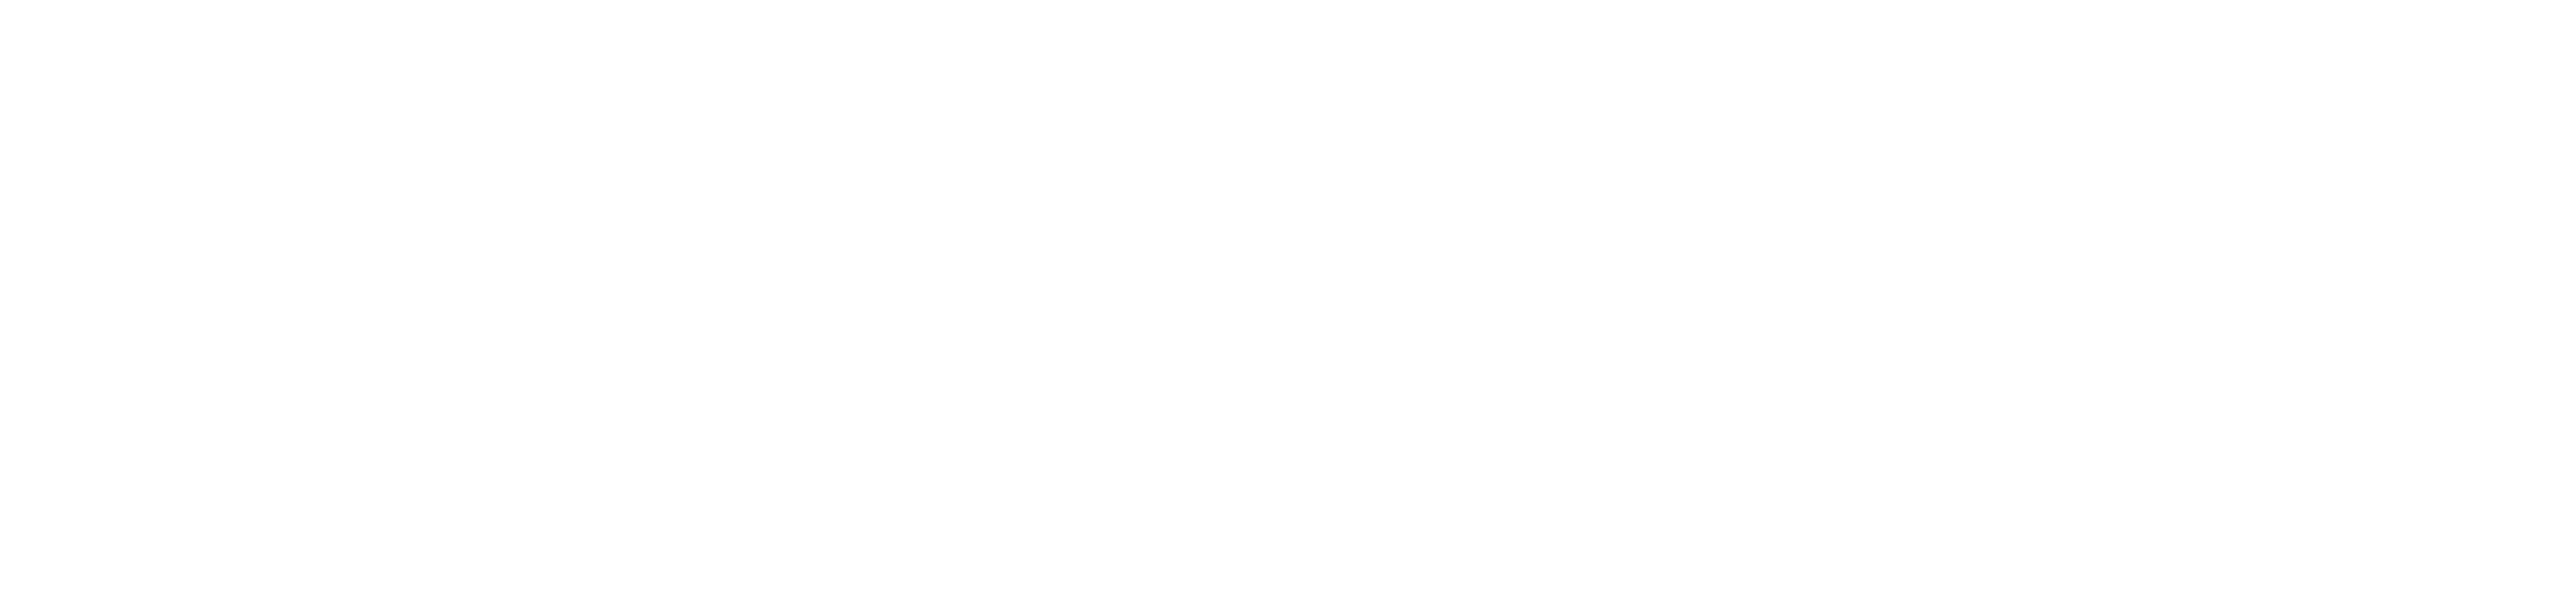 Digibee-logo-white